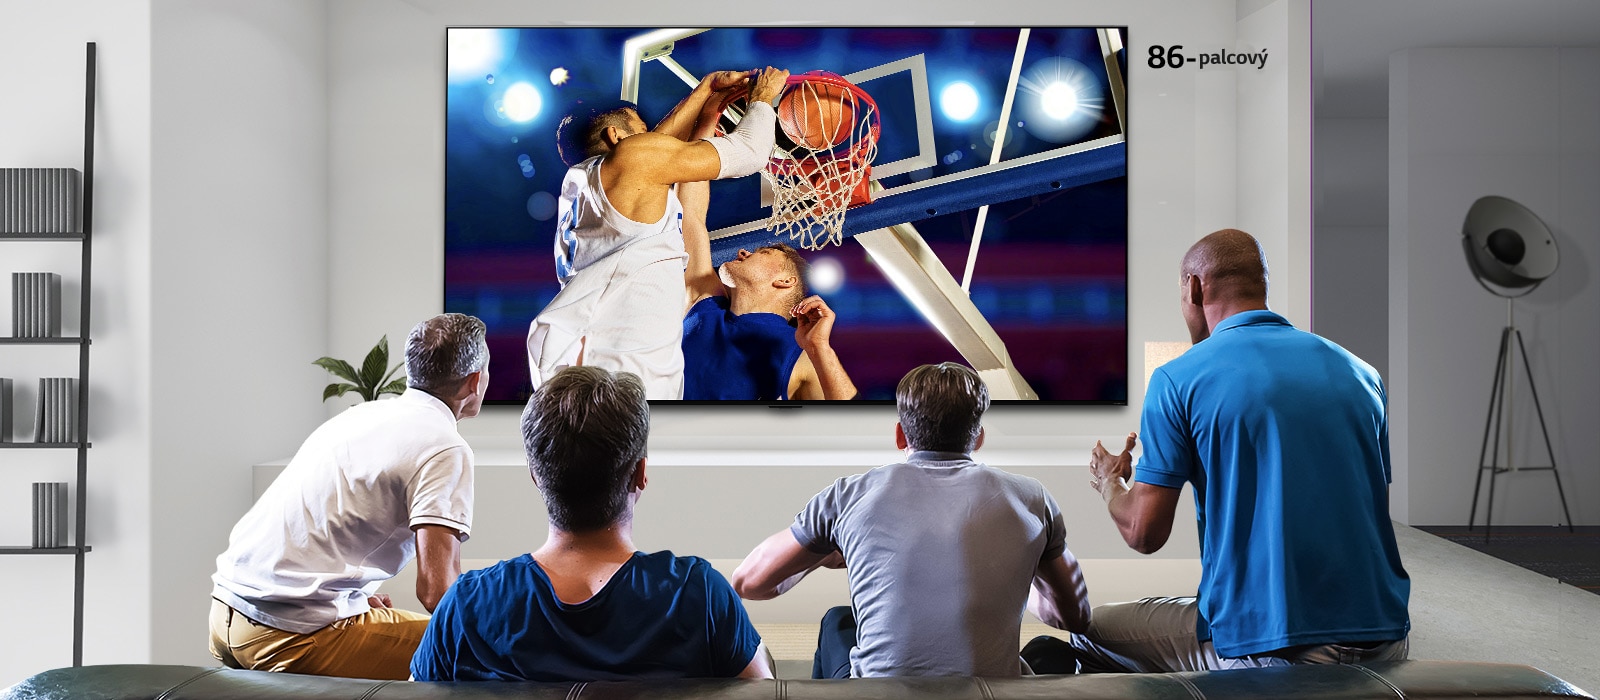 Pohľad zozadu na televízor osadený na stene. Zobrazuje štyroch mužov, ktorí sledujú basketbalový zápas. Posunutím zľava doprava sa zobrazí rozdiel medzi veľkosťou 43-palcovej a 86-palcovej obrazovky.